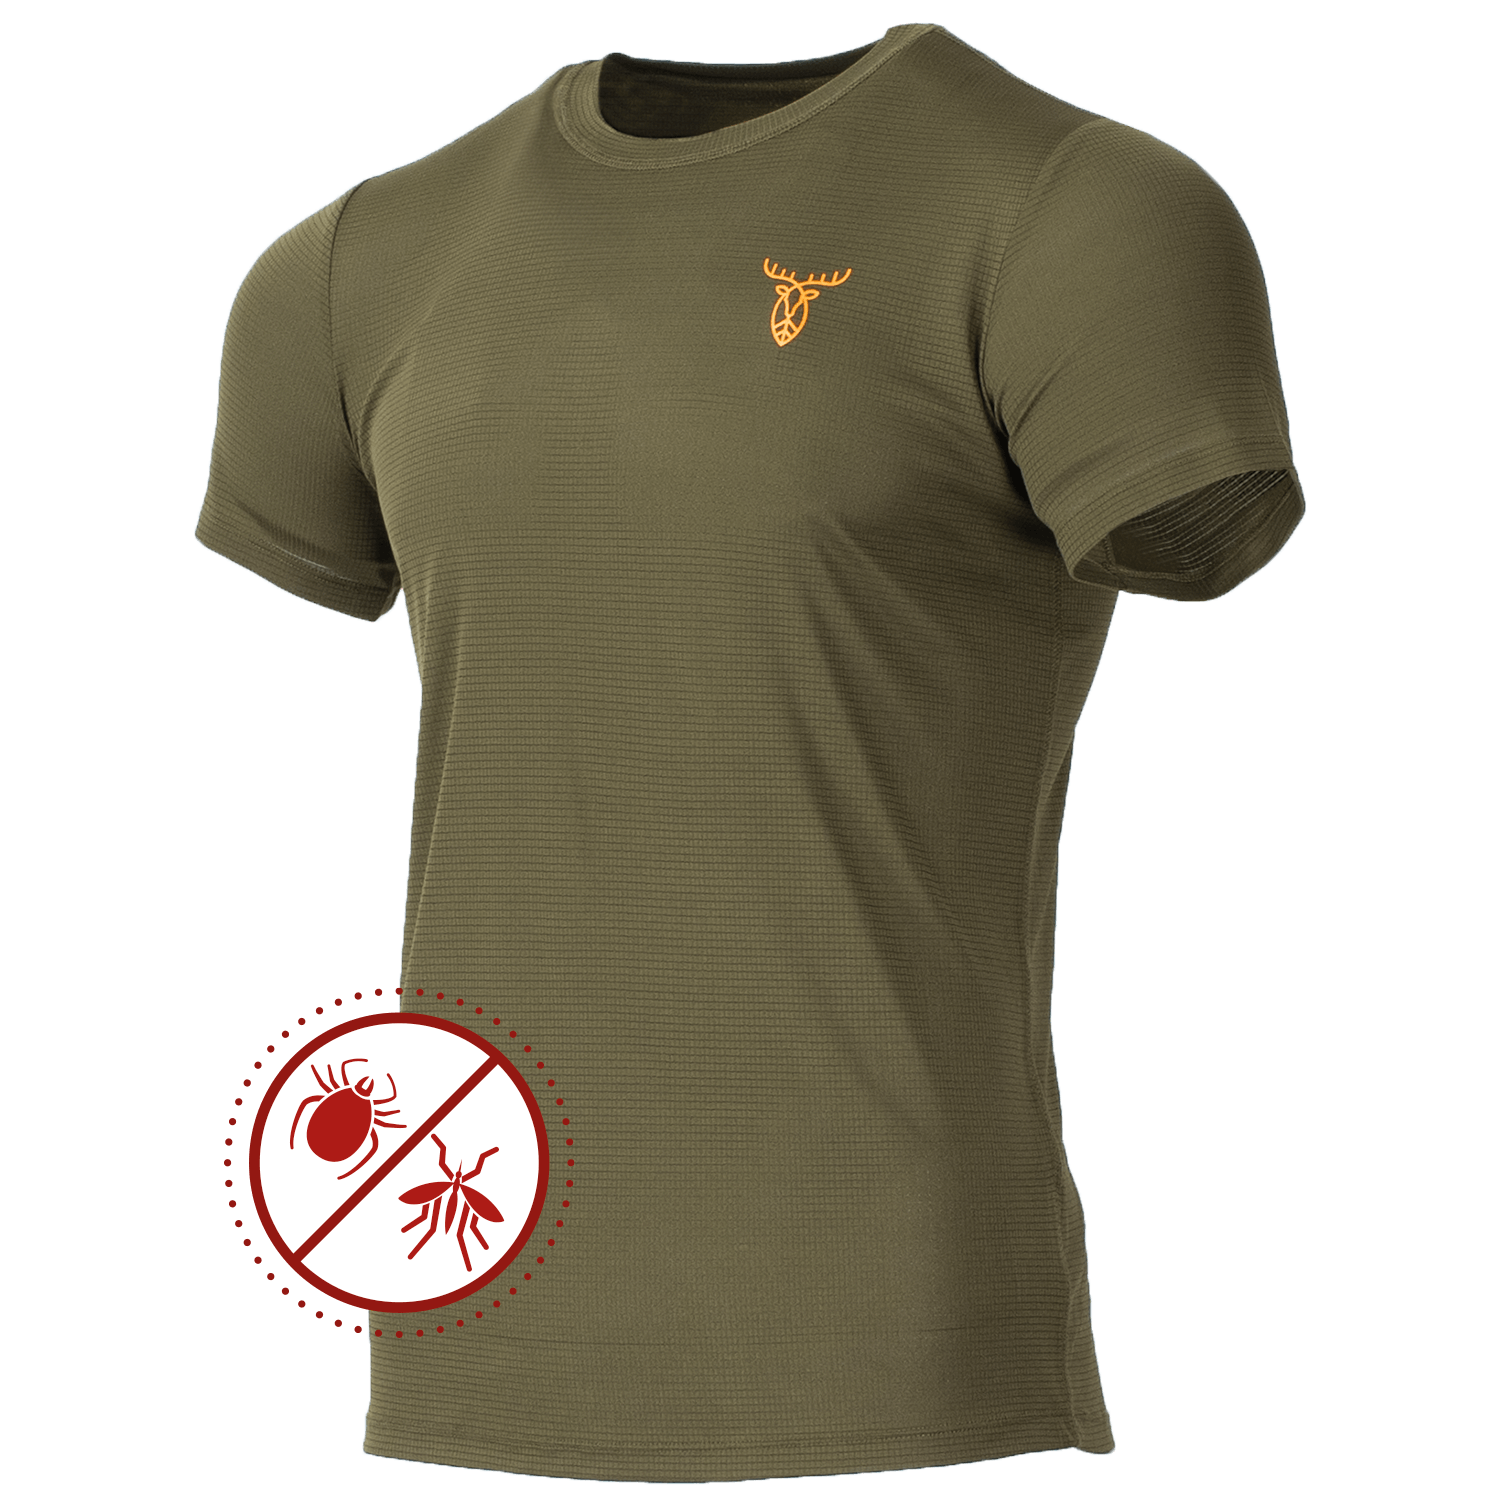 Pirscher Gear Ultralight Tanatex T-Shirt -  Roe Buck Hunting